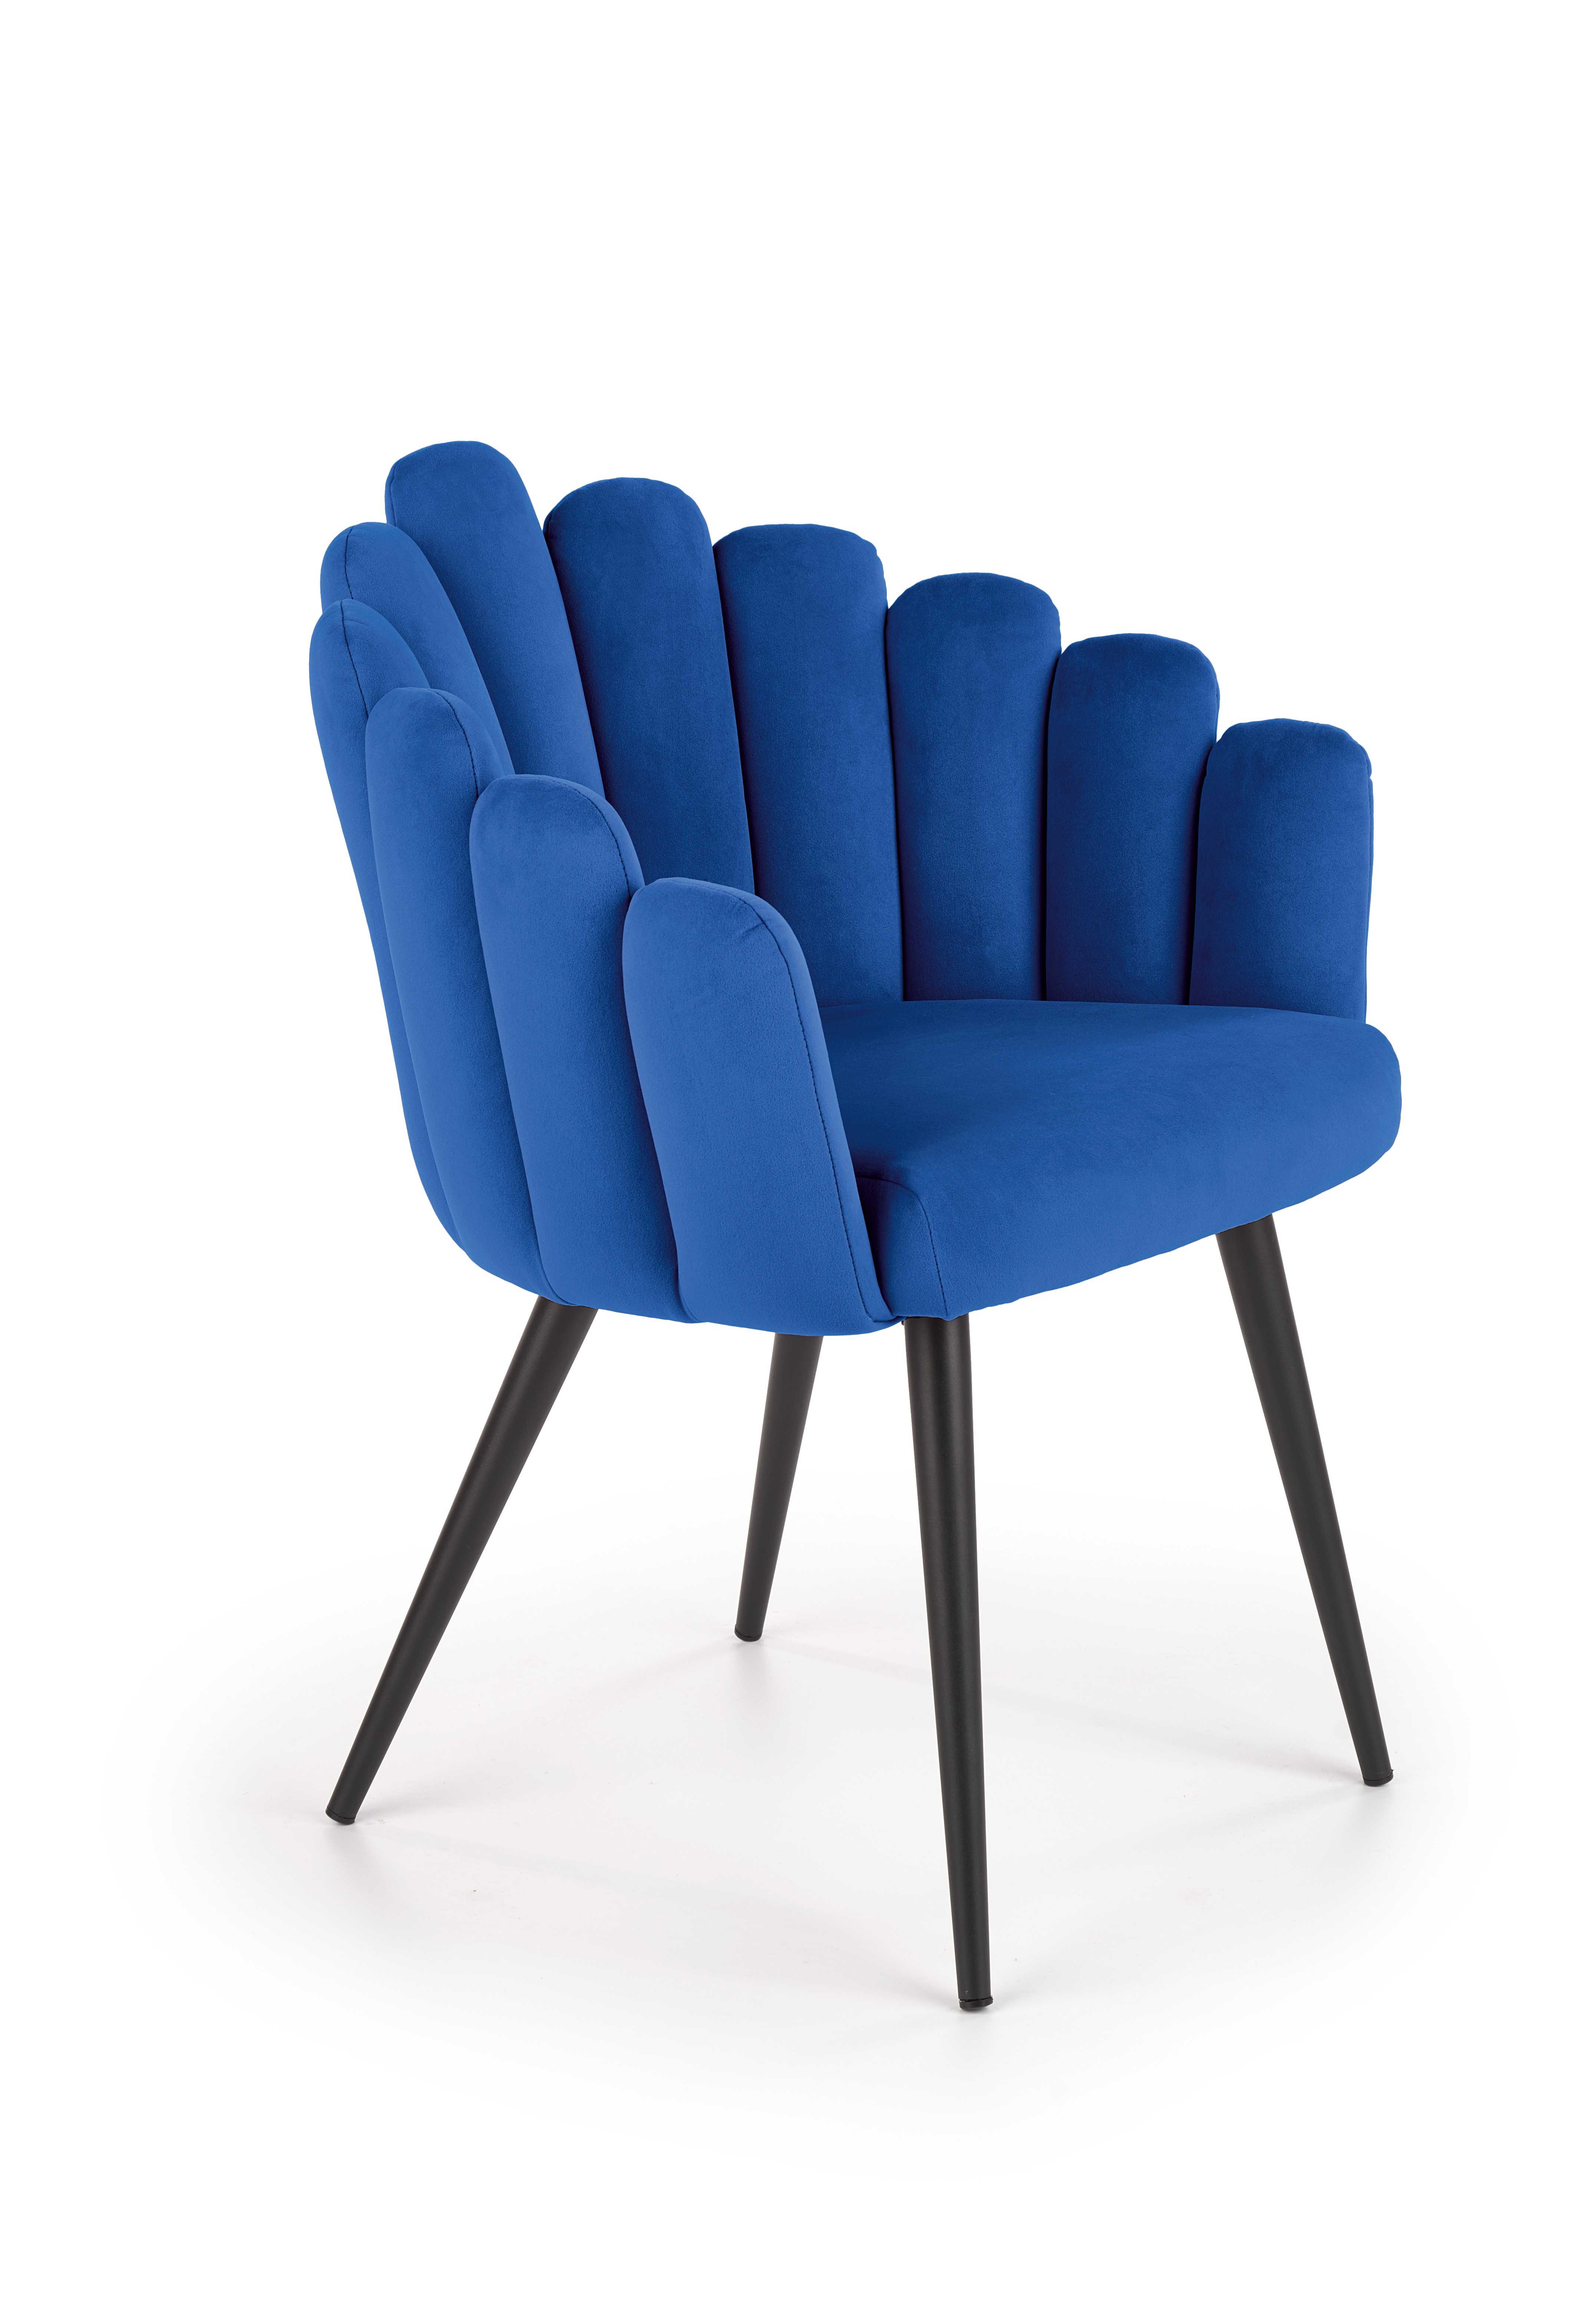 K410 szék, színe: sötétkék